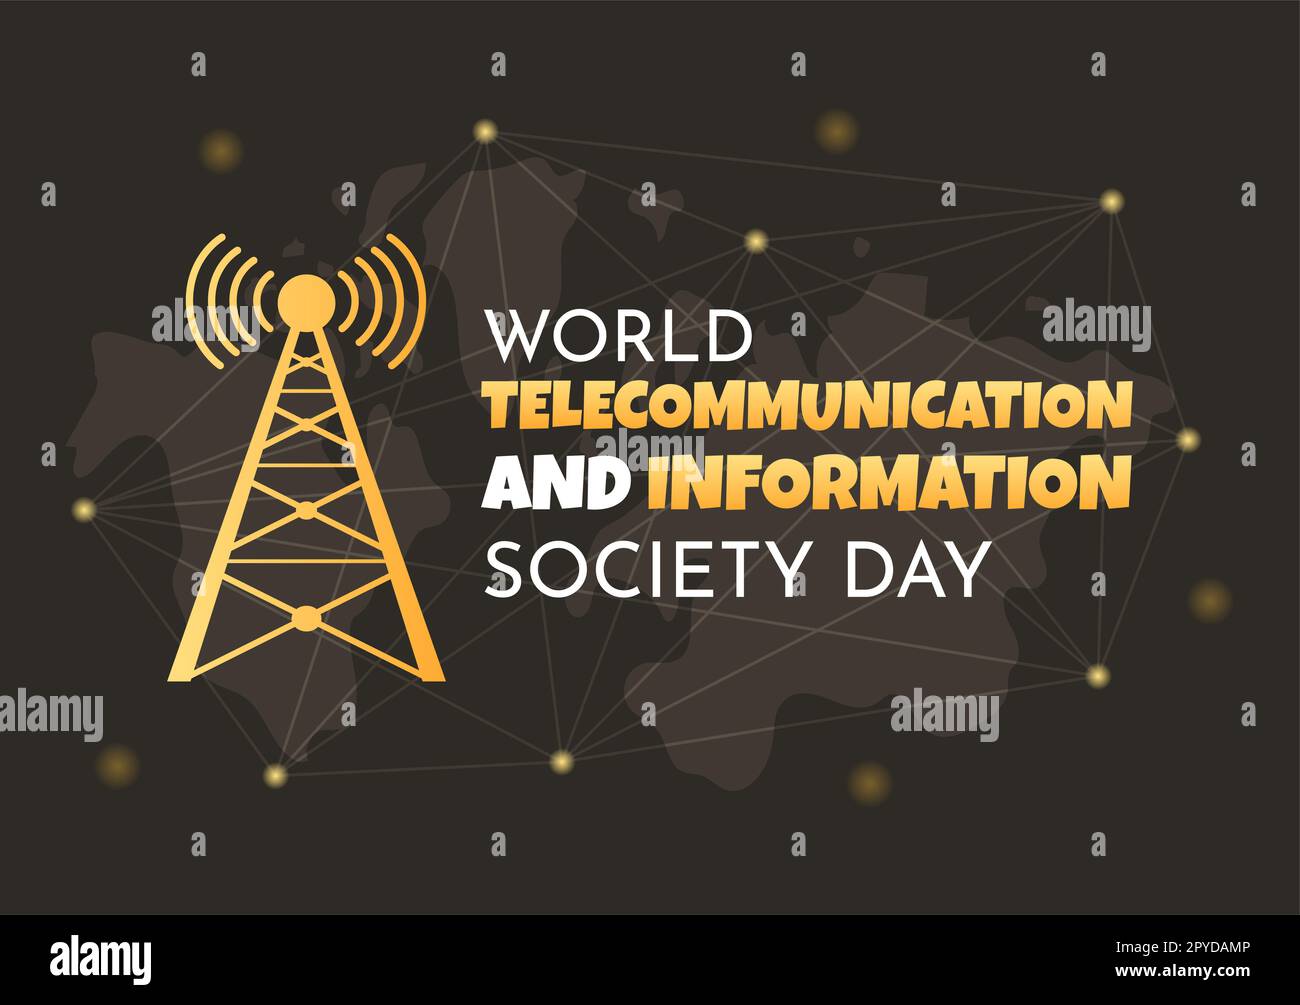 Welttag für Telekommunikation und Informationsgesellschaft am 17. Mai Illustration mit dem Kommunikationsnetzwerk der Erde in handgezeichneten Vorlagen Stockfoto